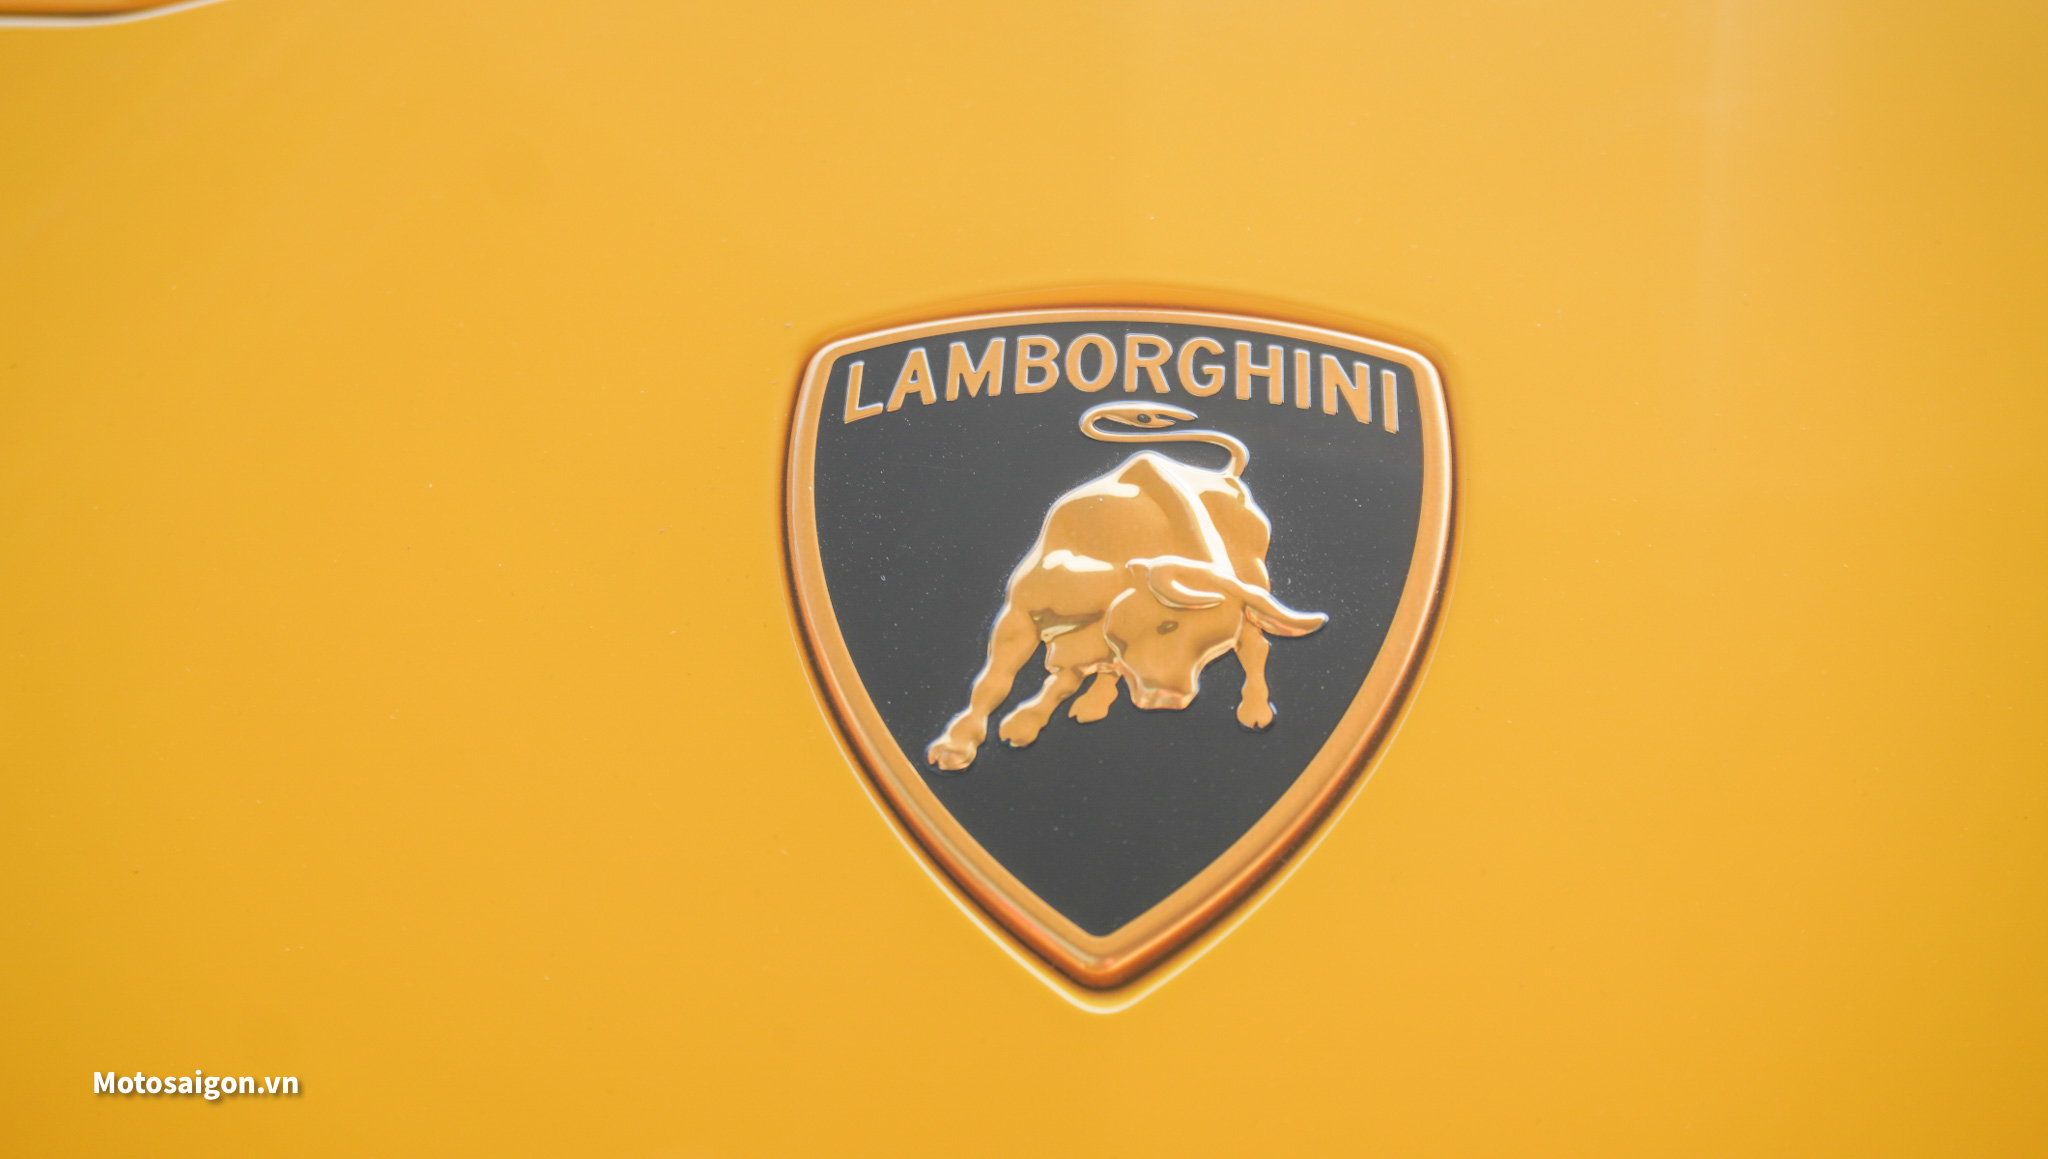 Lamborghini Urus SUV: Road Test